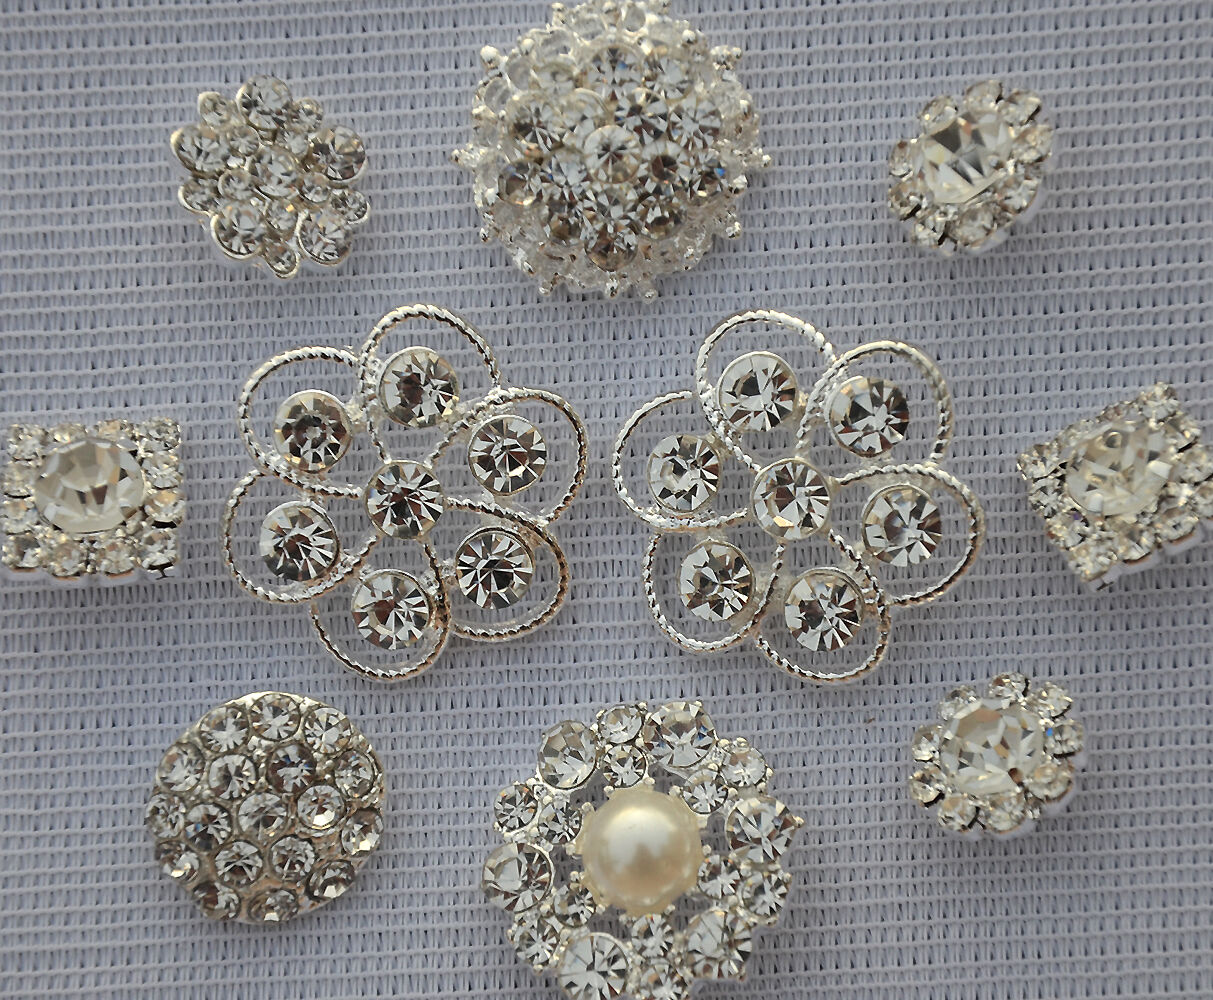 50 Assorted Rhinestone Button Brooch Embellishment Pearl Crystal Wedding Brooch  Your Perfect Gifts - фотография #3